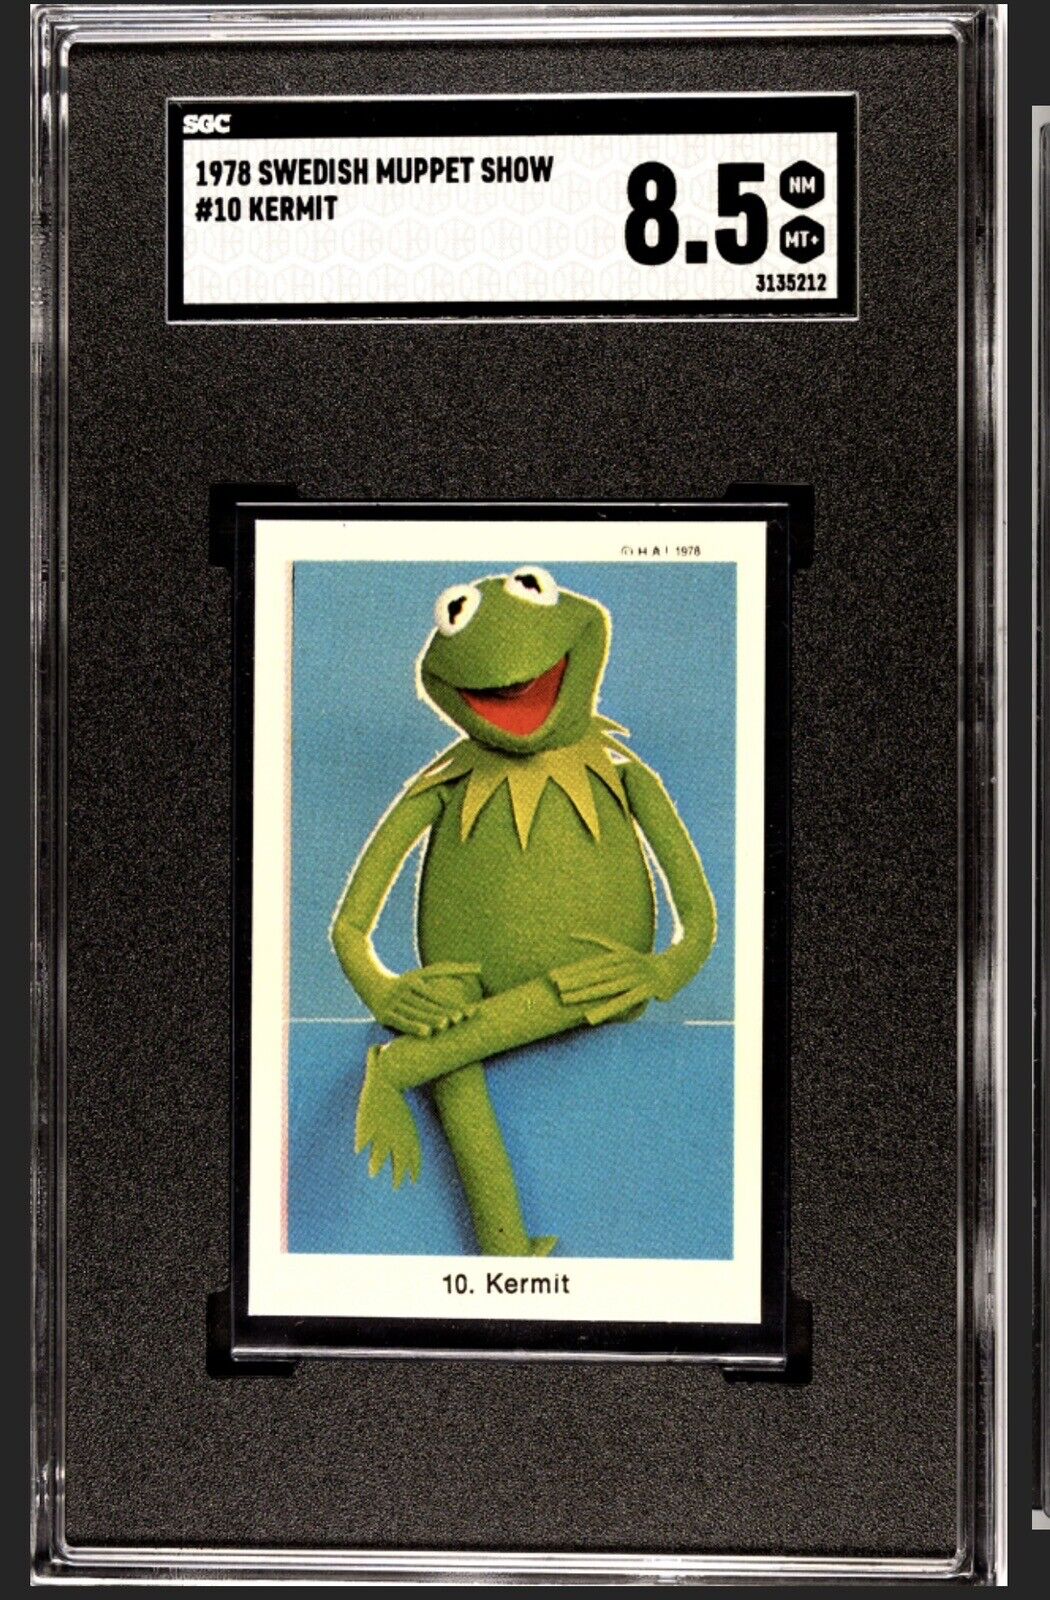 1978 SWEDISH KERMIT ROOKIE CARD JIM HENSEN MUPPETS SGC 8.5 POP 1 HIGHEST GRADE